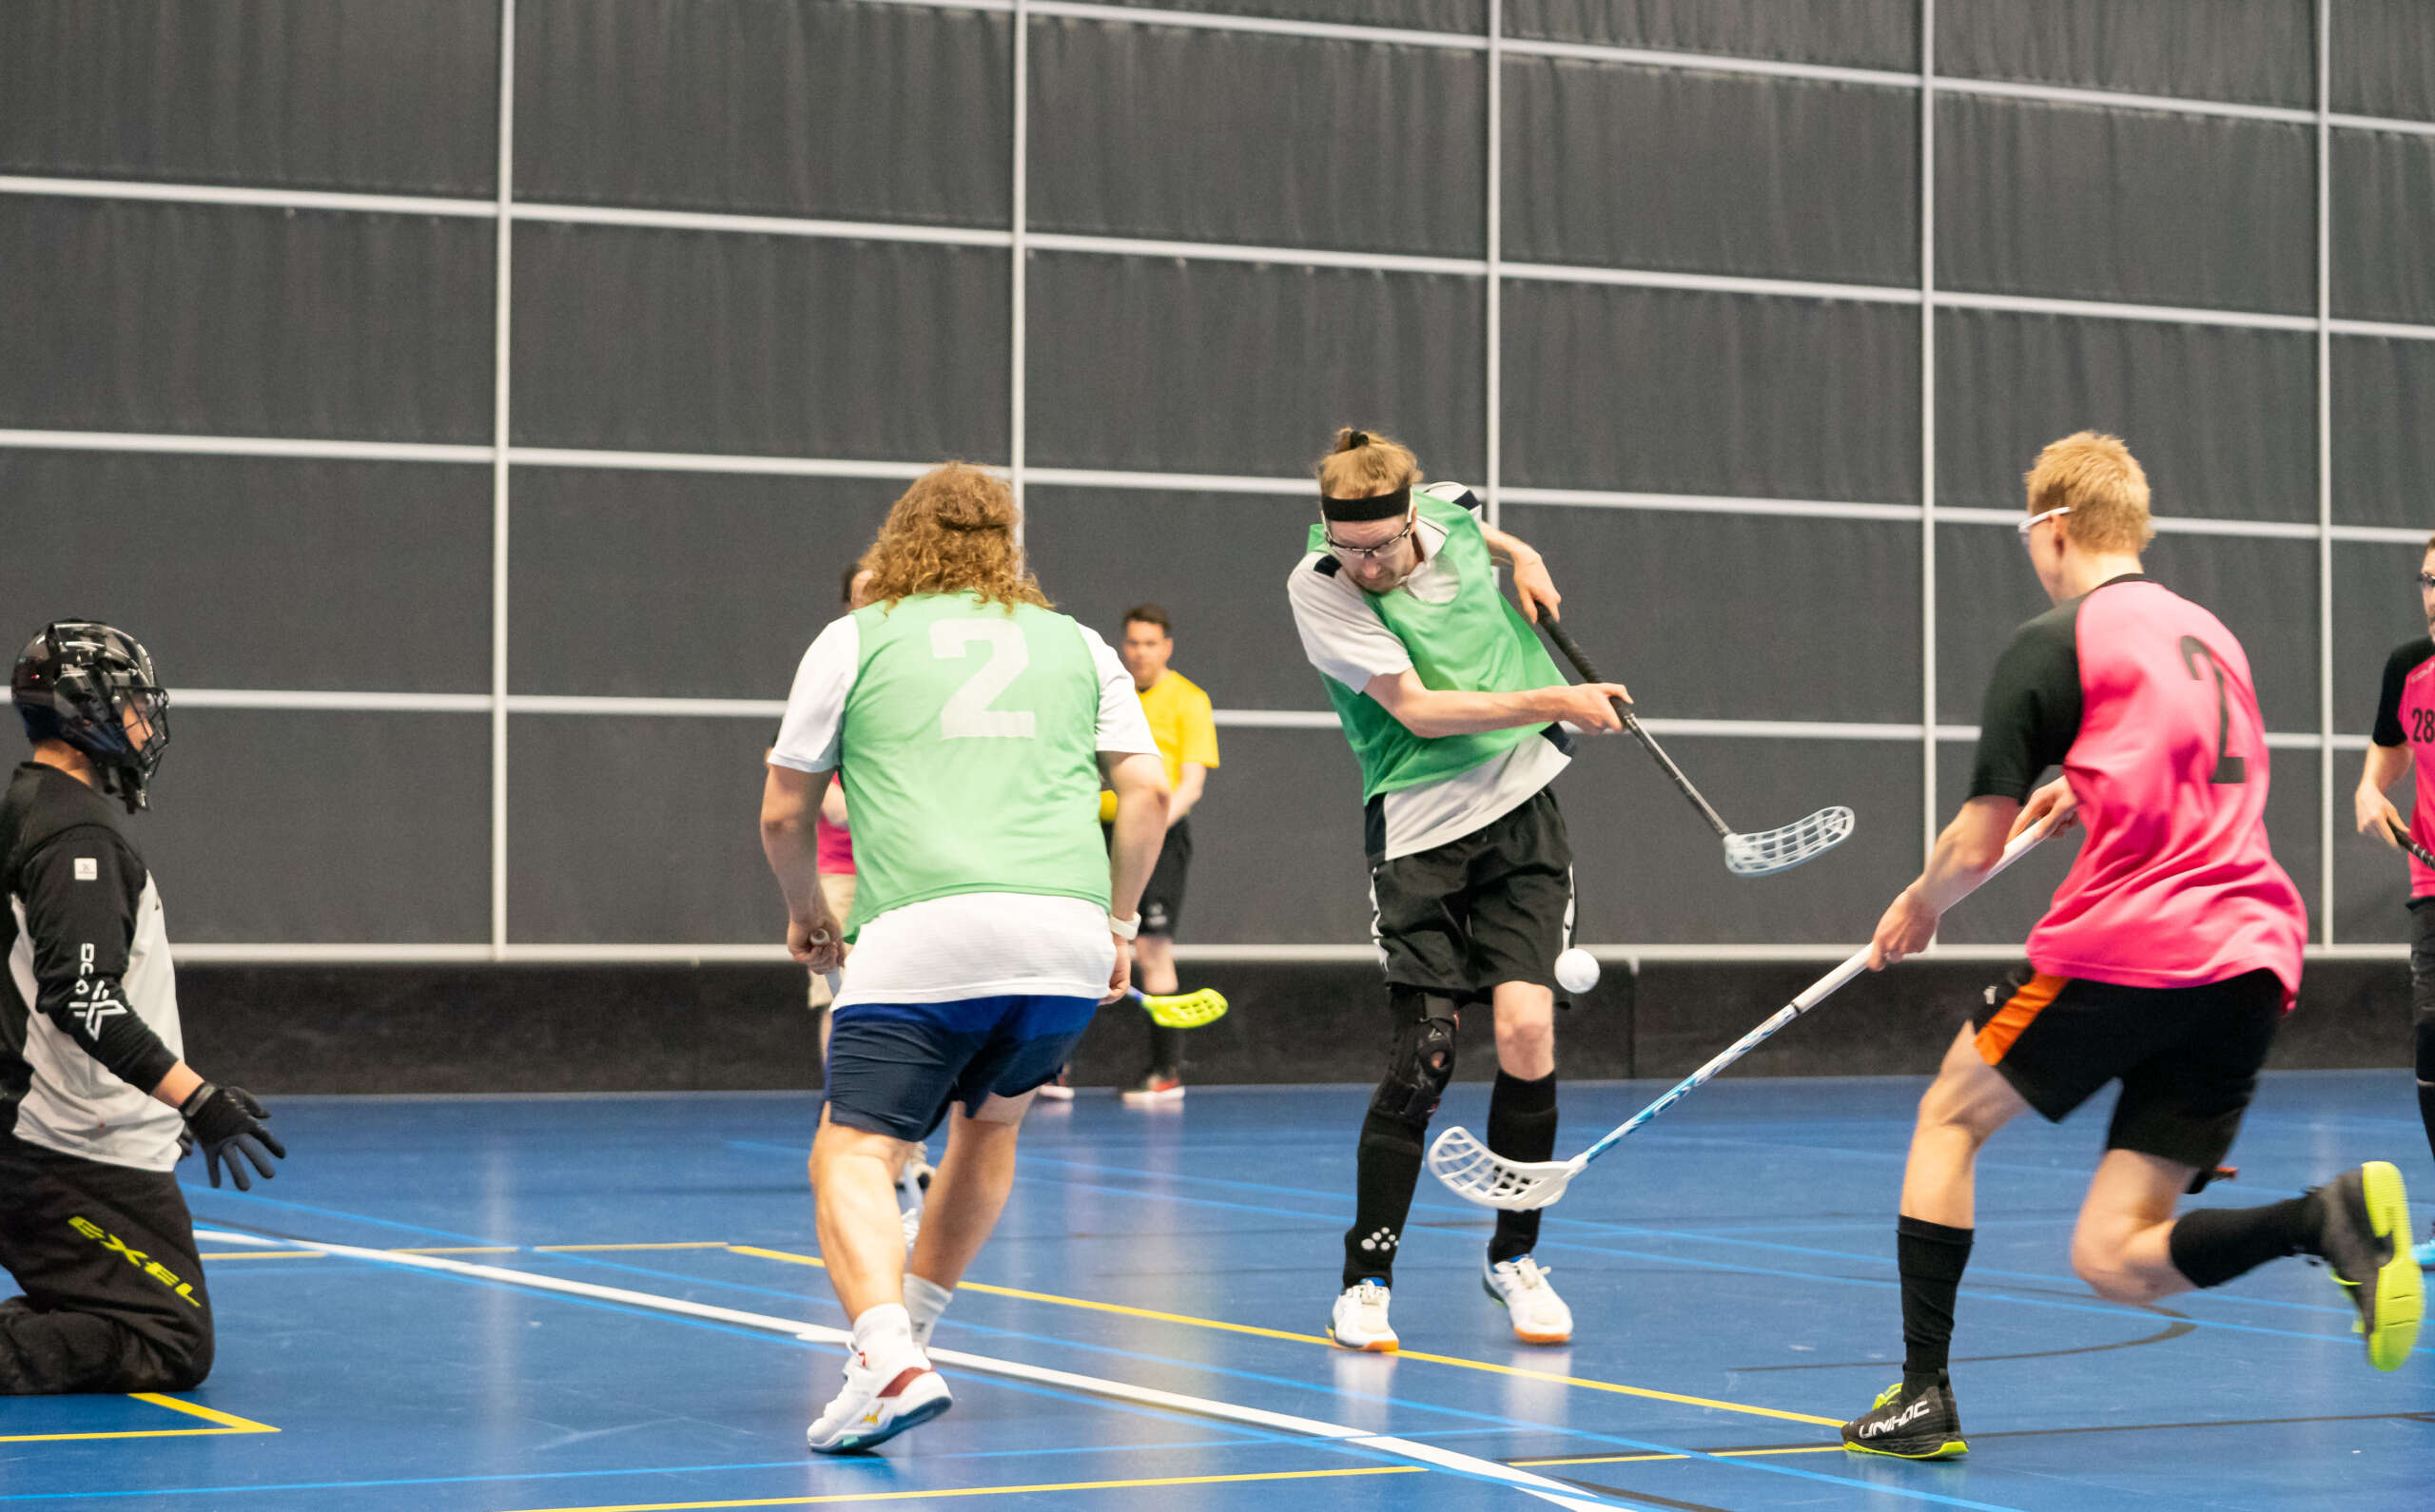 Vihreään liivin pukeutunut pelaaja syöttää joukkuekaverille maalintekopaikkaan. Vastustajajoukkueen pelaaja juoksee puolustamaan maalia.